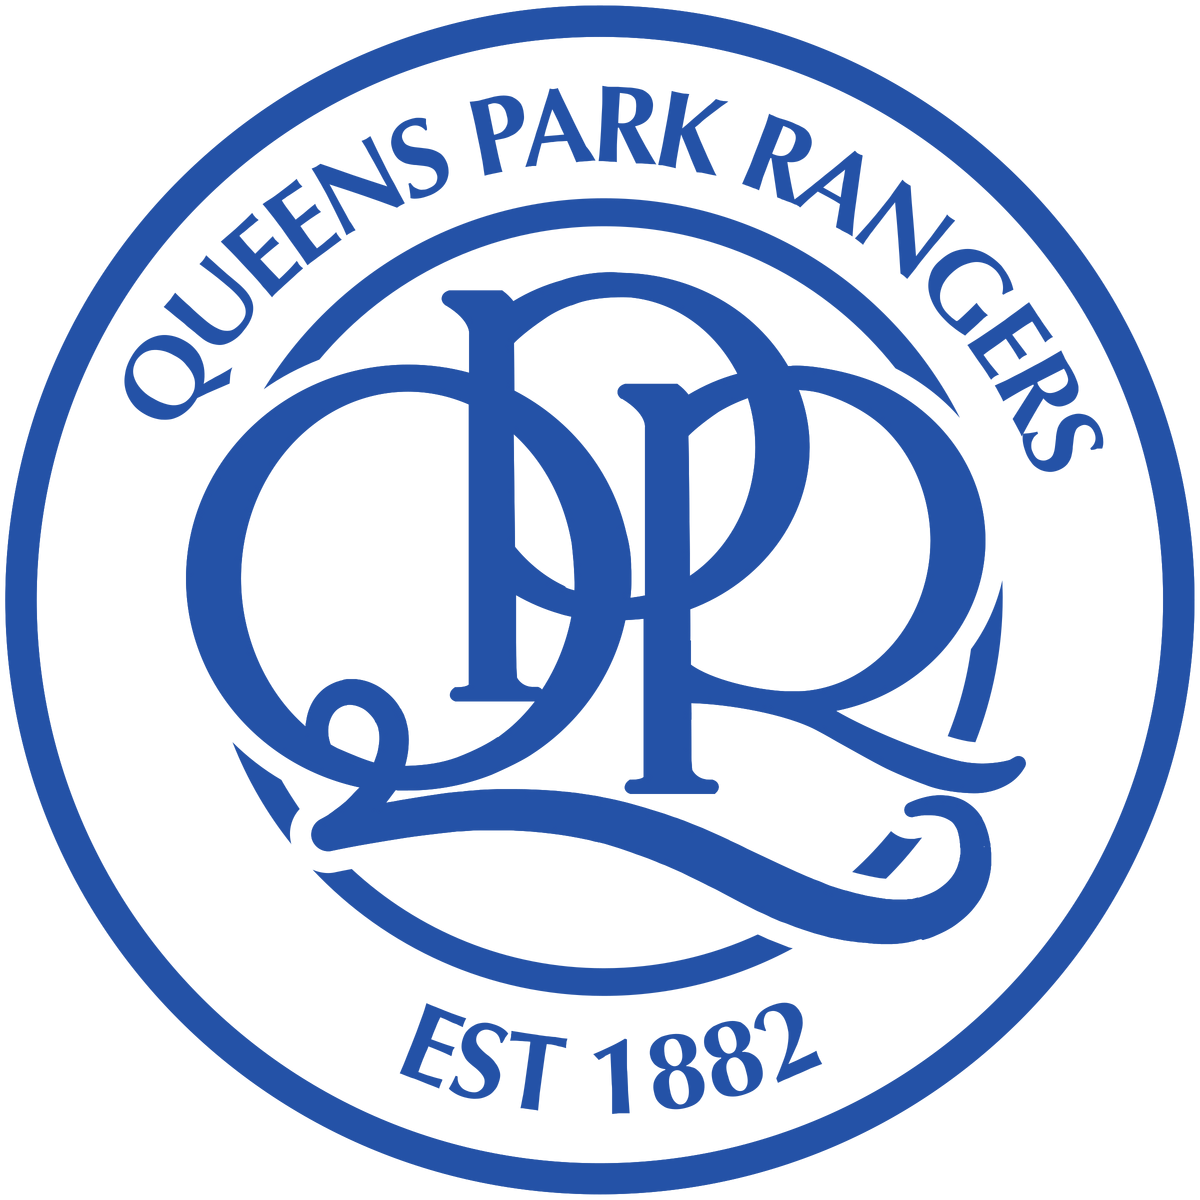 Queens Park Rangers F.C. - Wikipedia